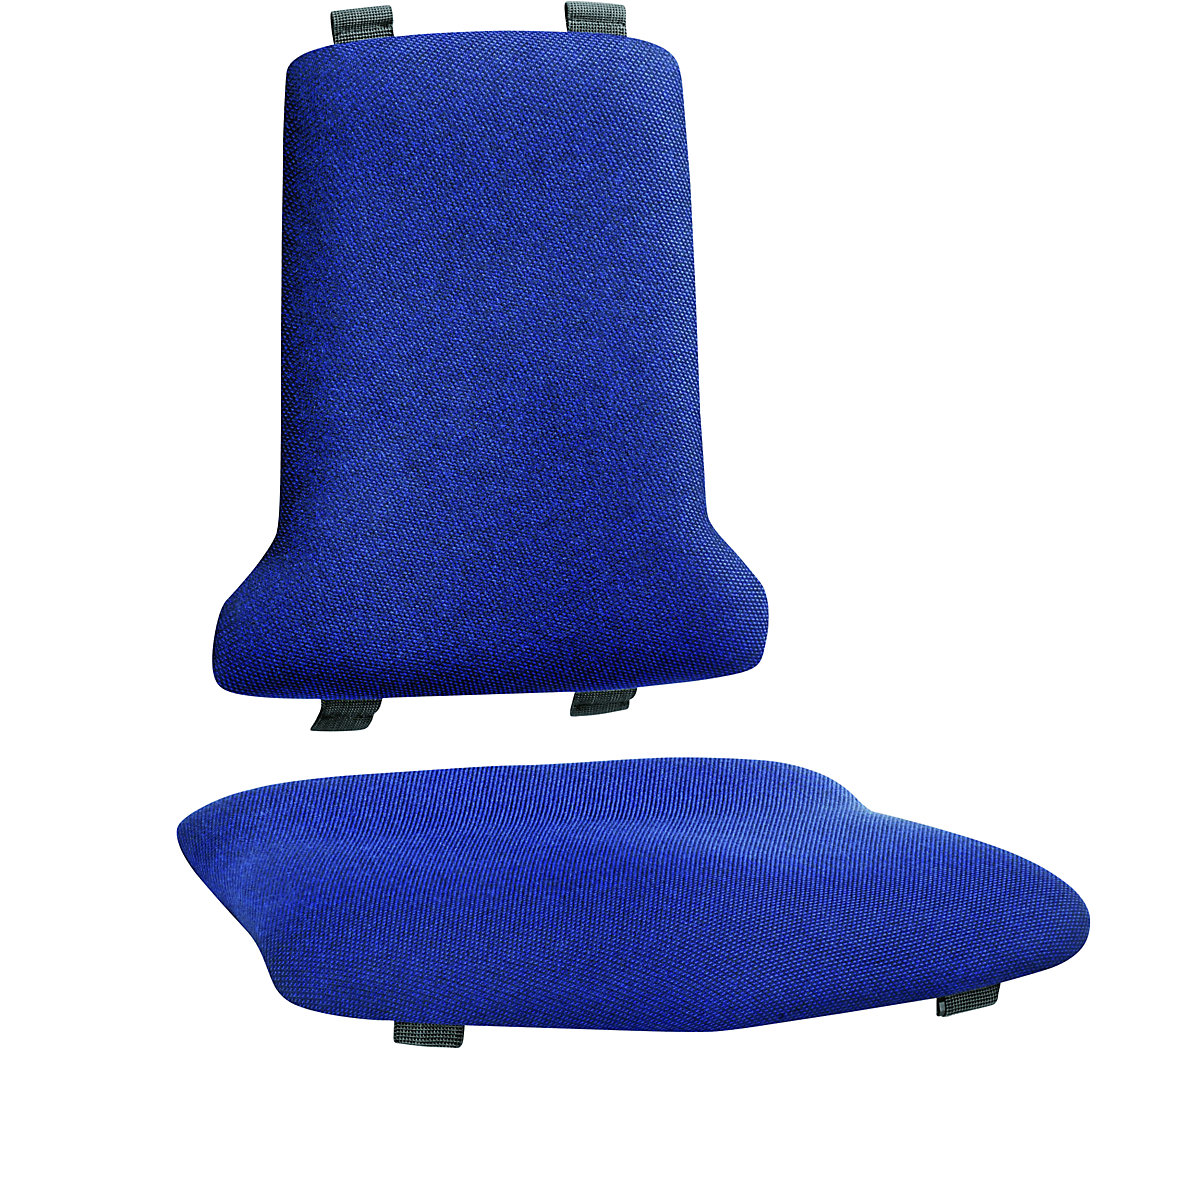 Polster bimos, Standard-Ausführung, je 1 Polster für Sitz und Rückenlehne, Textil-Polster, blau-3